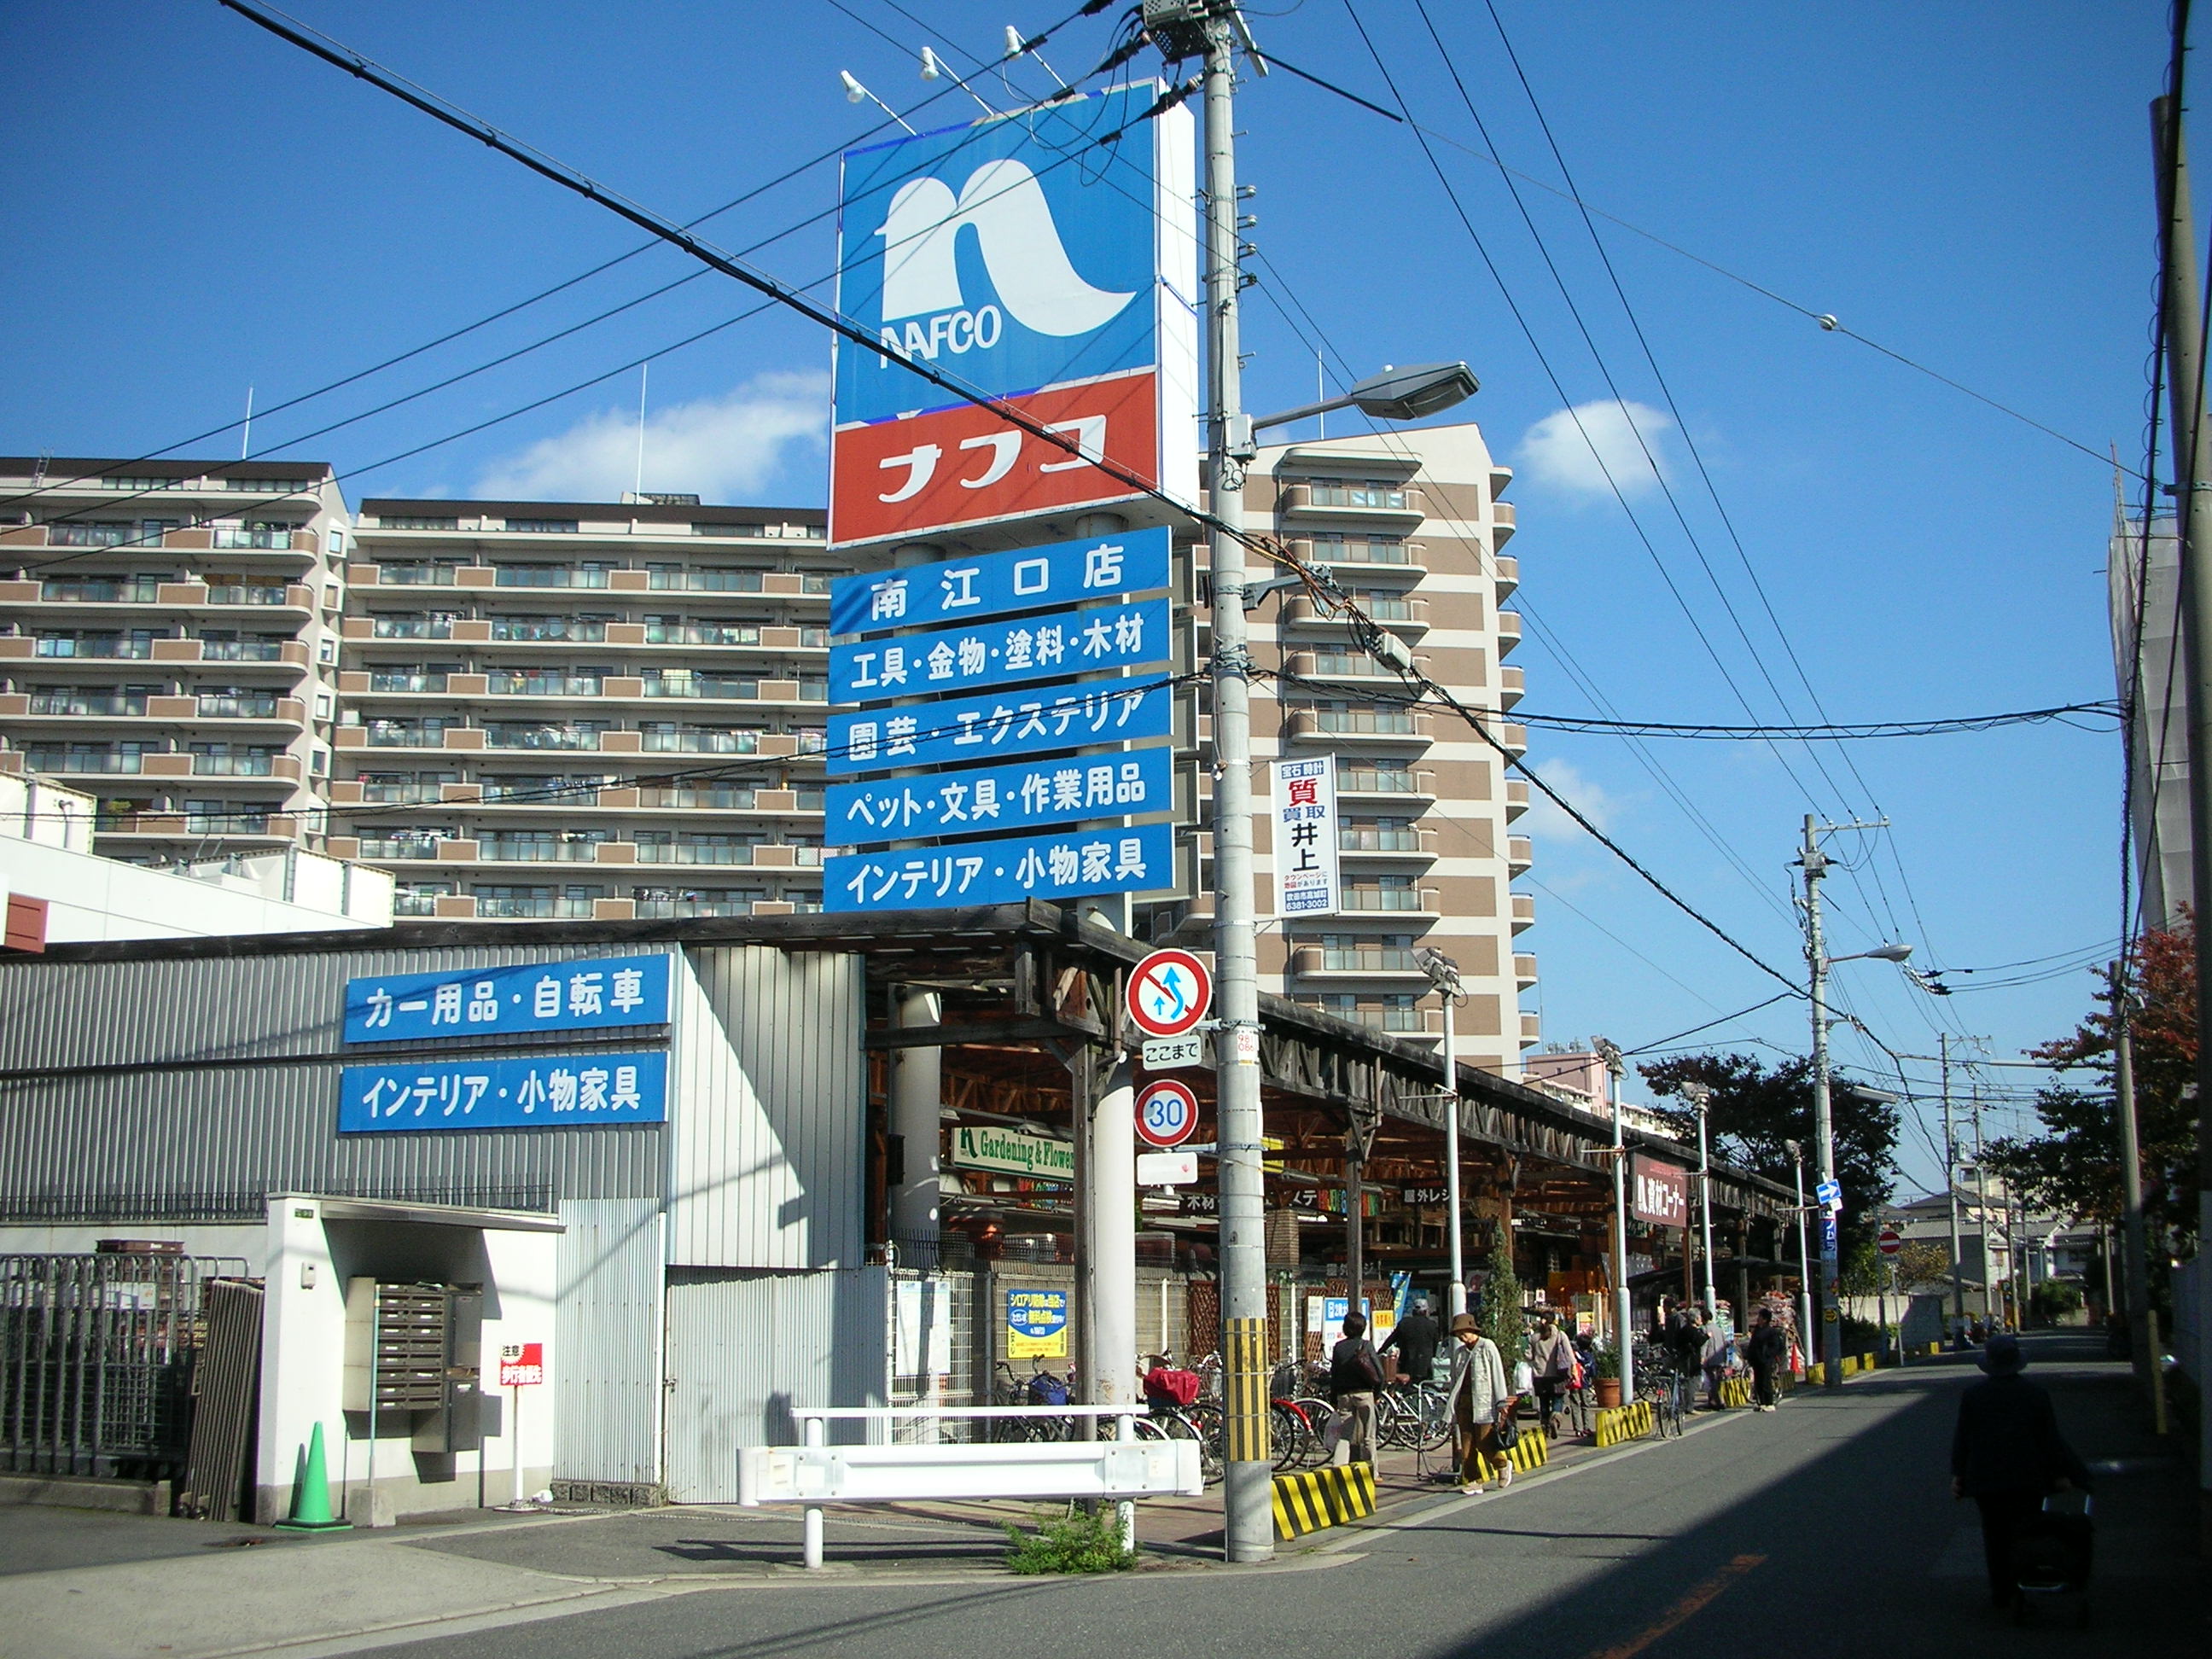 Home center. 529m to Ho Mupurazanafuko Minamieguchi store (hardware store)